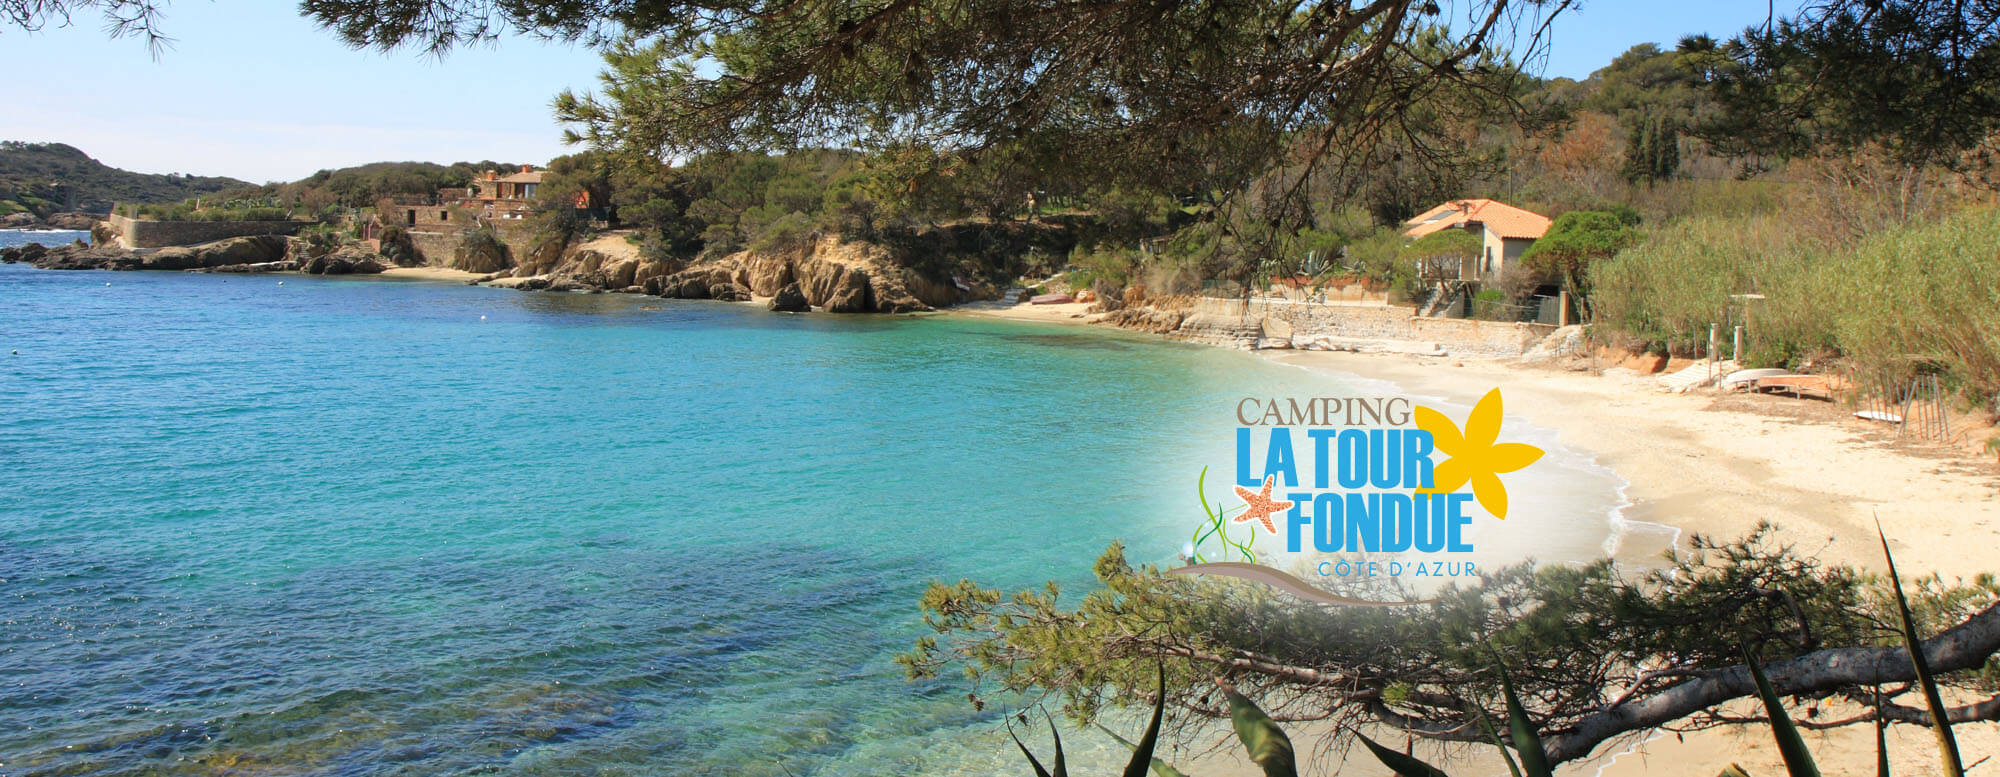 Le camping La Tour Fondue est situé sur la Presqu'île de Giens, au bord de mer, près de Porquerolles. Découvrez les plaisirs du camping dans le Var !